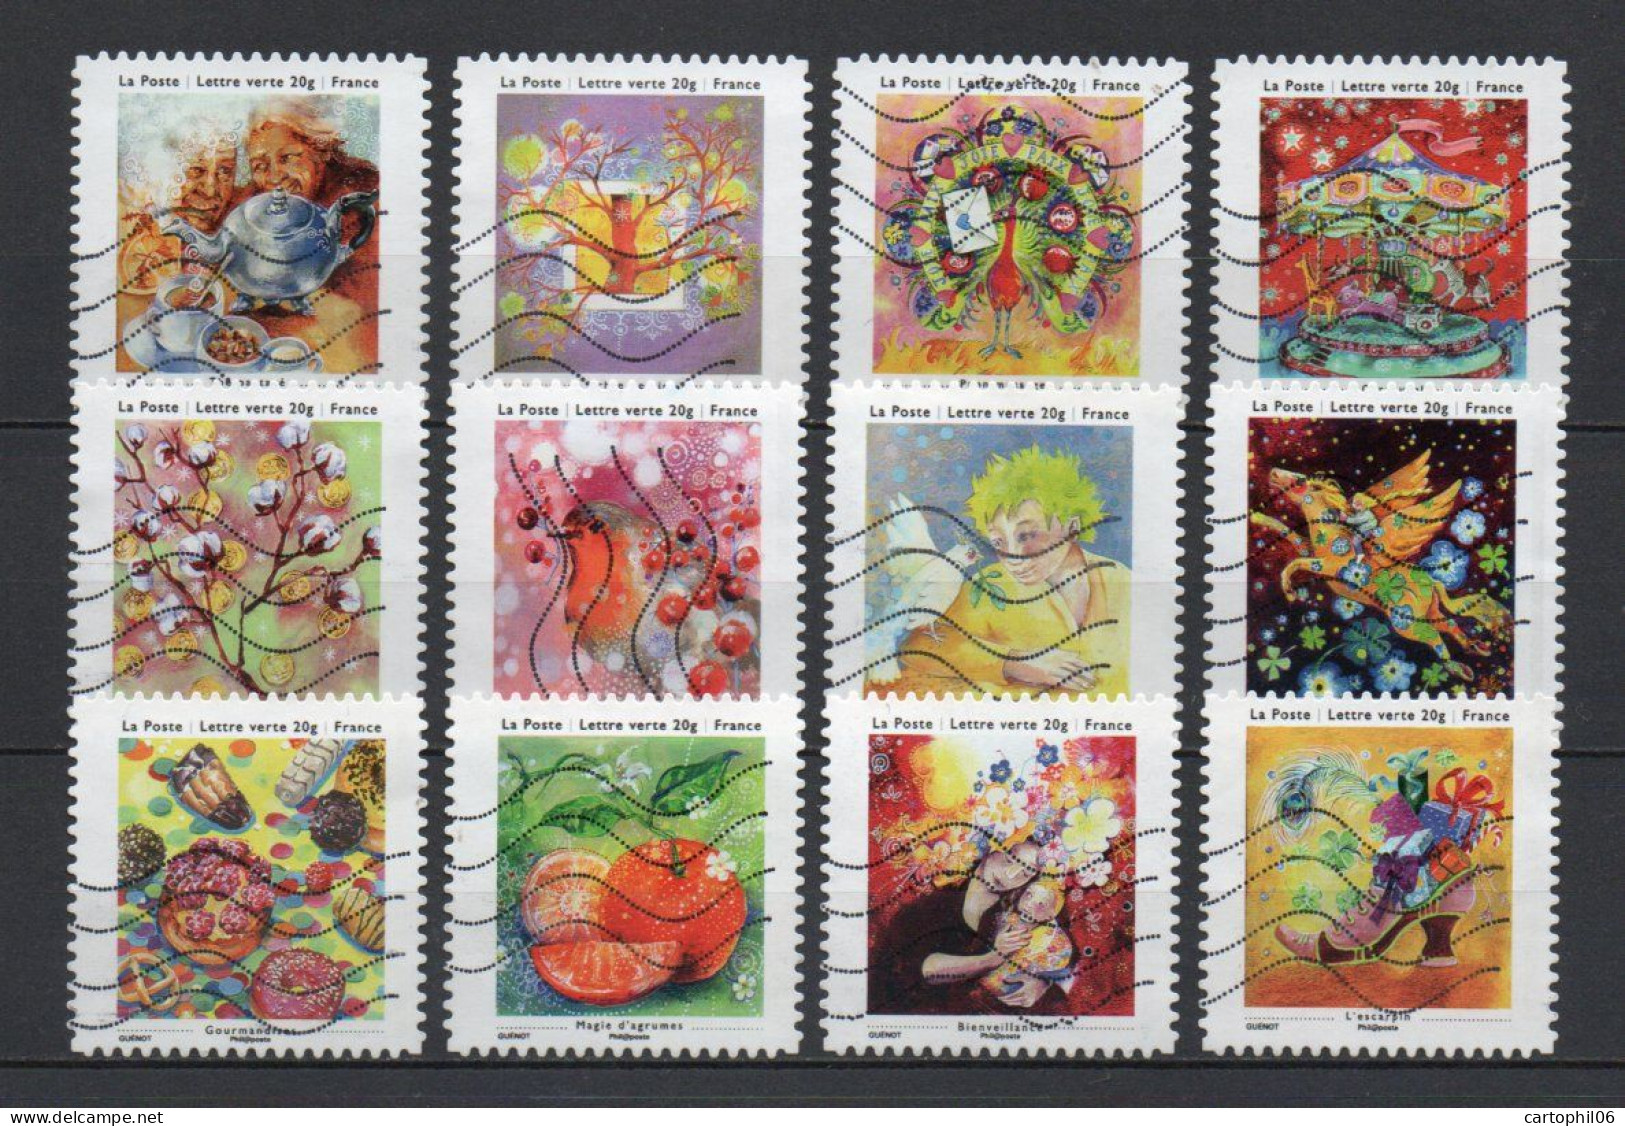 - FRANCE Adhésifs N° 901/12 Oblitérés - Série Complète LES PETITS BONHEURS 2013 (12 Timbres) - - Used Stamps